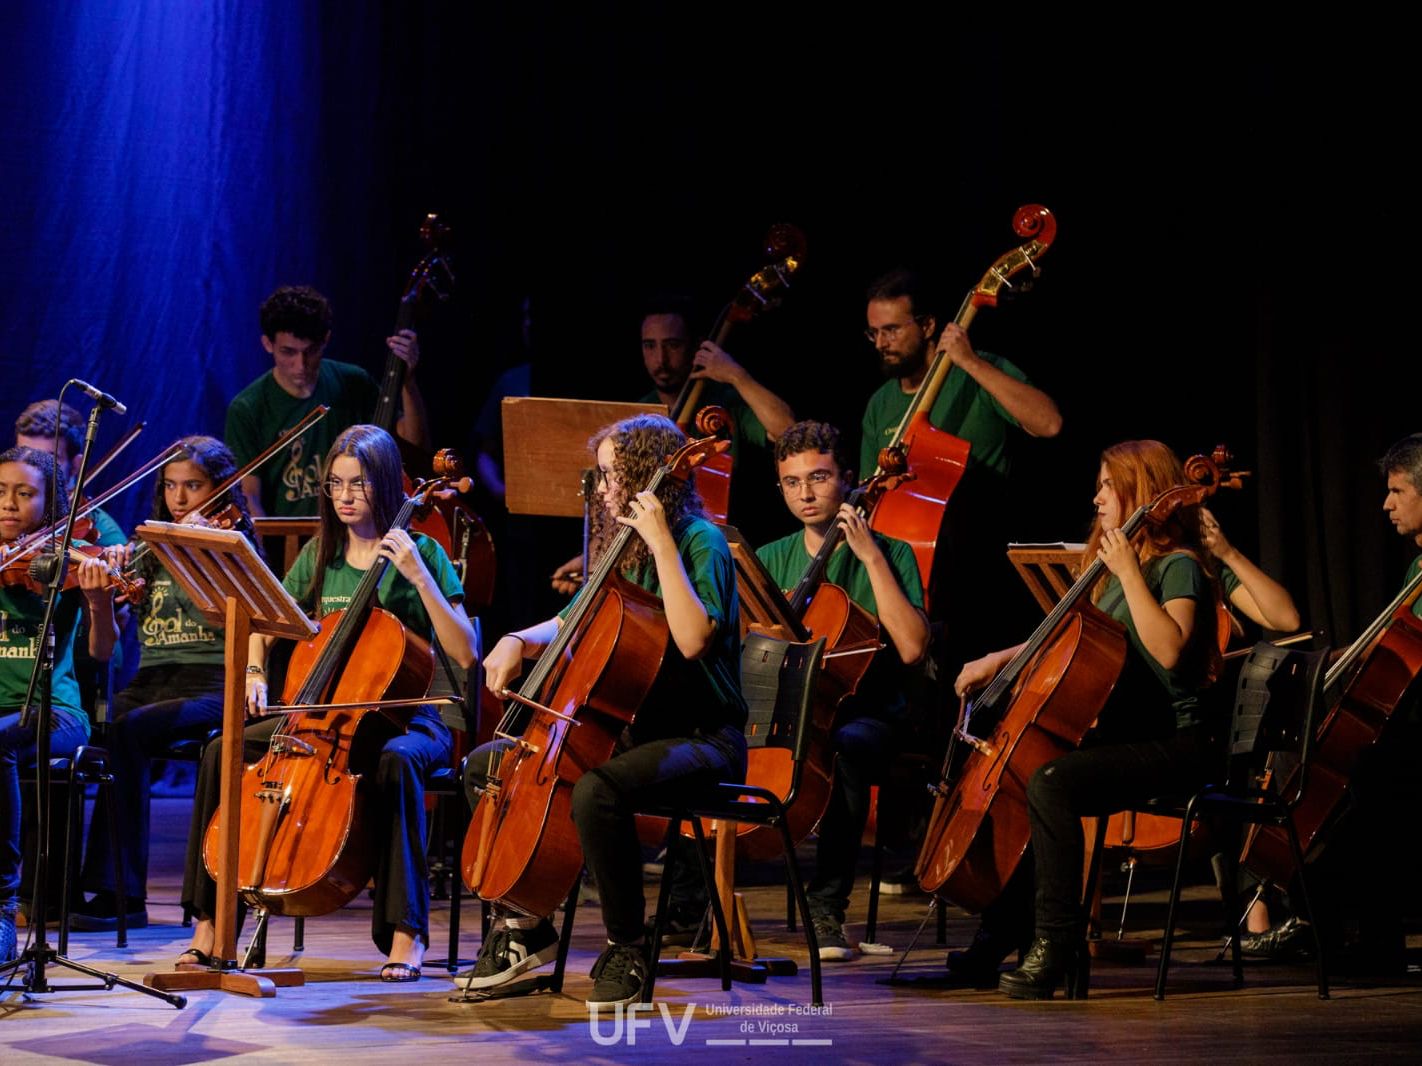 Membros da orquestra tocando violoncelos, violinos e contrabaixos num palco iluminado em azul. 